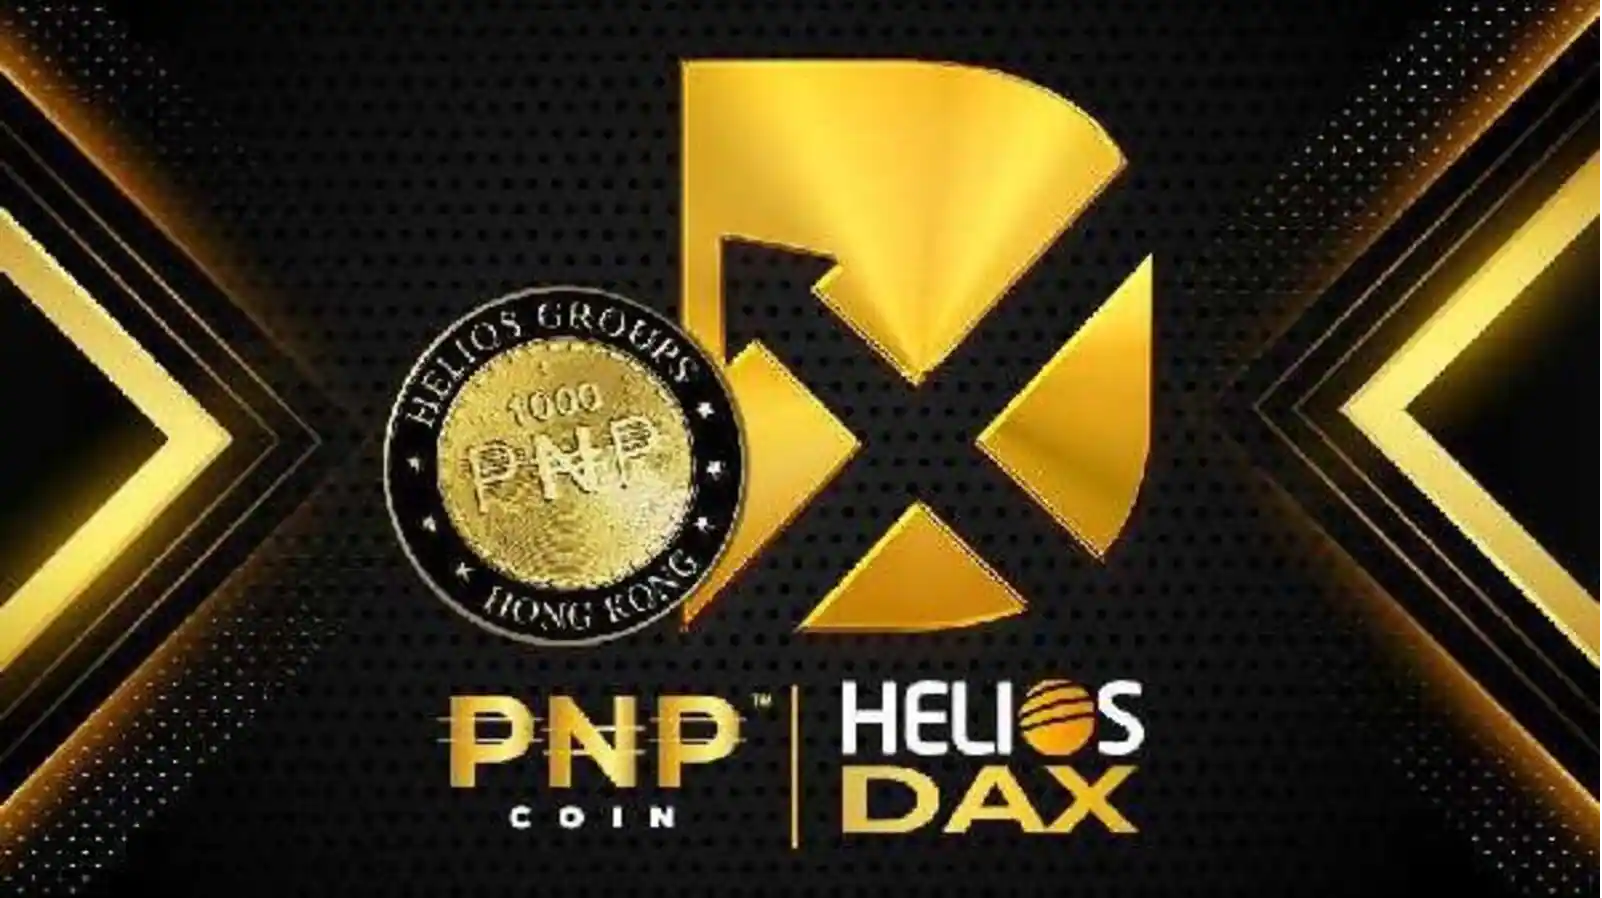 إليك كيفية قيام Helios DAX بإحداث تقدم بمجال العملات المشفرة